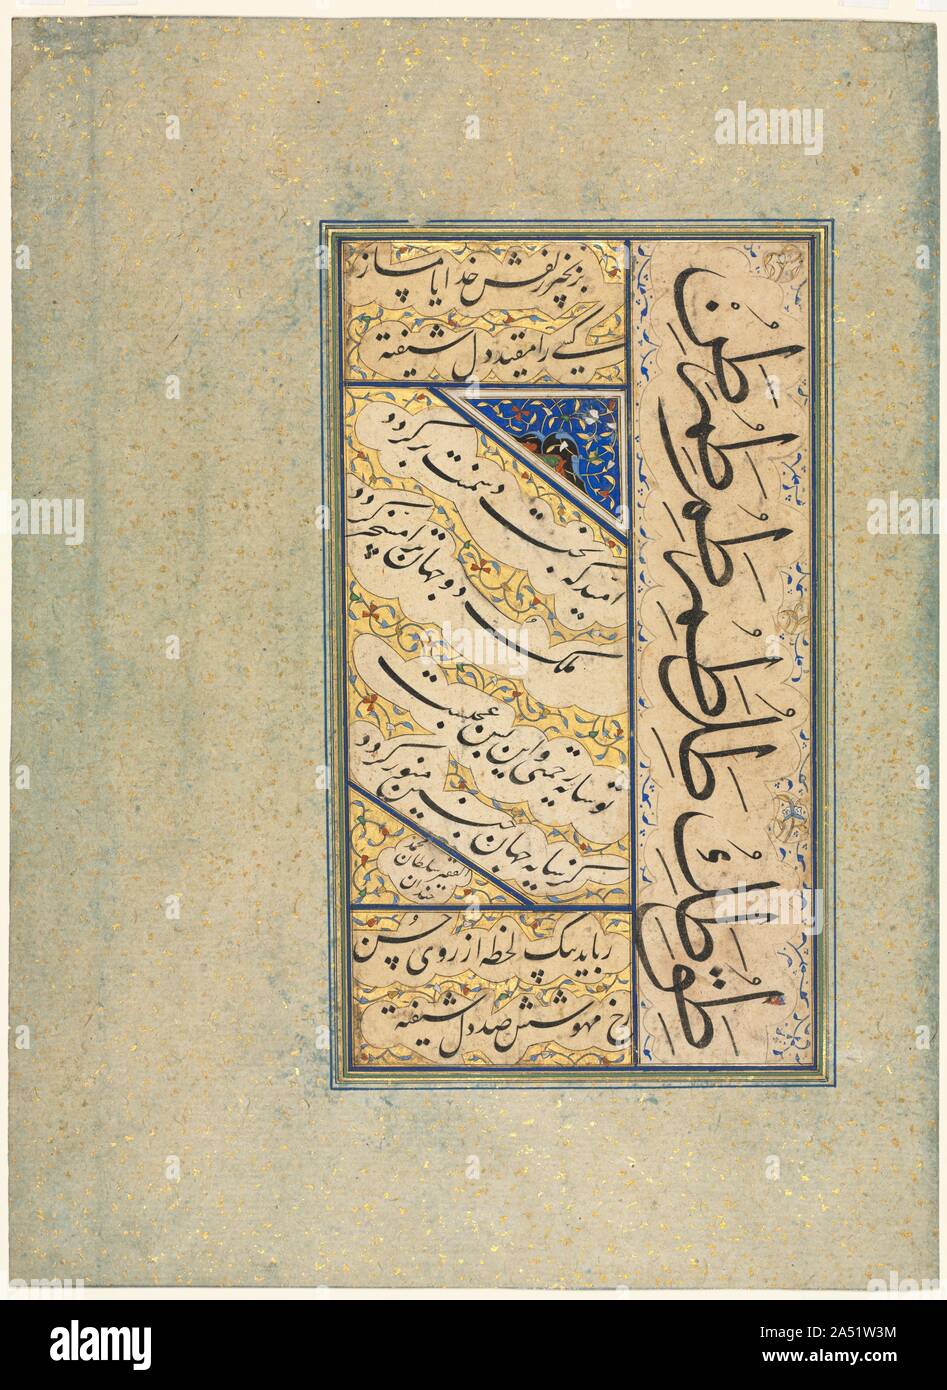 Quatrains persans (Rubayi) et Exercices calligraphiques, ch. 1509-59. Cette page contient deux quatrains&# x2014;poèmes composé de quatre lignes. Le texte écrit en diagonale au centre de la page est un poème adressé à une règle, exprimant l'espoir pour sa réussite et la chute de ses ennemis. Le second poème est divisé entre les panneaux horizontaux en haut et en bas de la page. Ce quatrain fait l'éloge de la beauté de l'écrivain&# x2019;s bien-aimé, en disant que "son visage lunaire peut voler loin d'une centaine de coeurs besotted." à droite sont des exercices calligraphiques voir de lettres de l'alphabet Banque D'Images